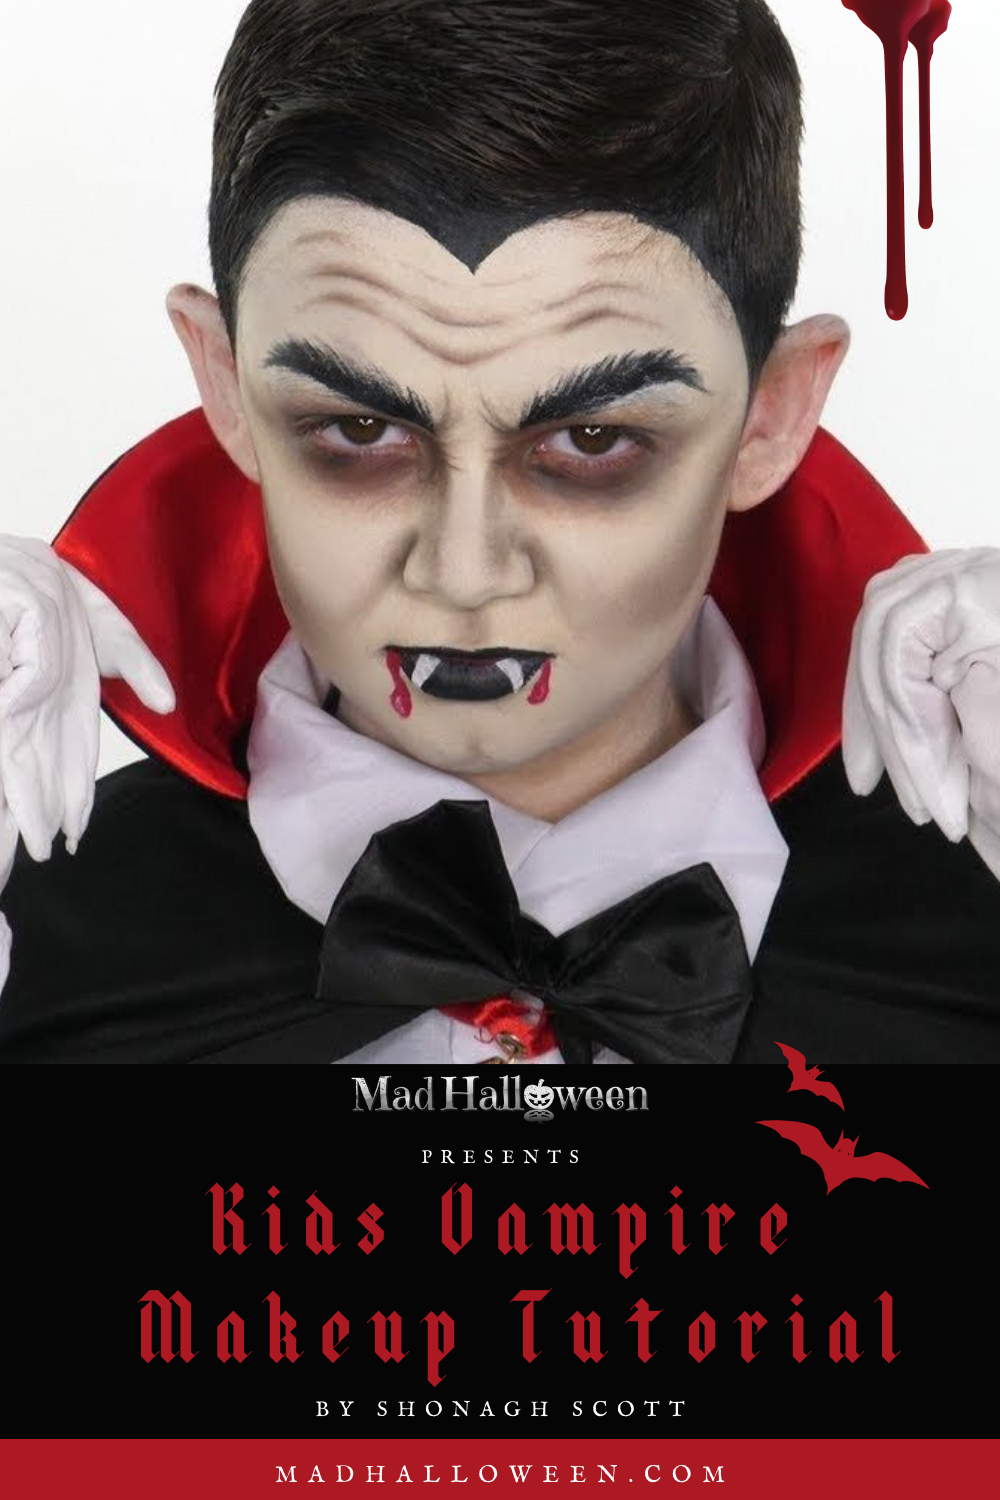 Vampire Face Paint, Halloween Kids Look